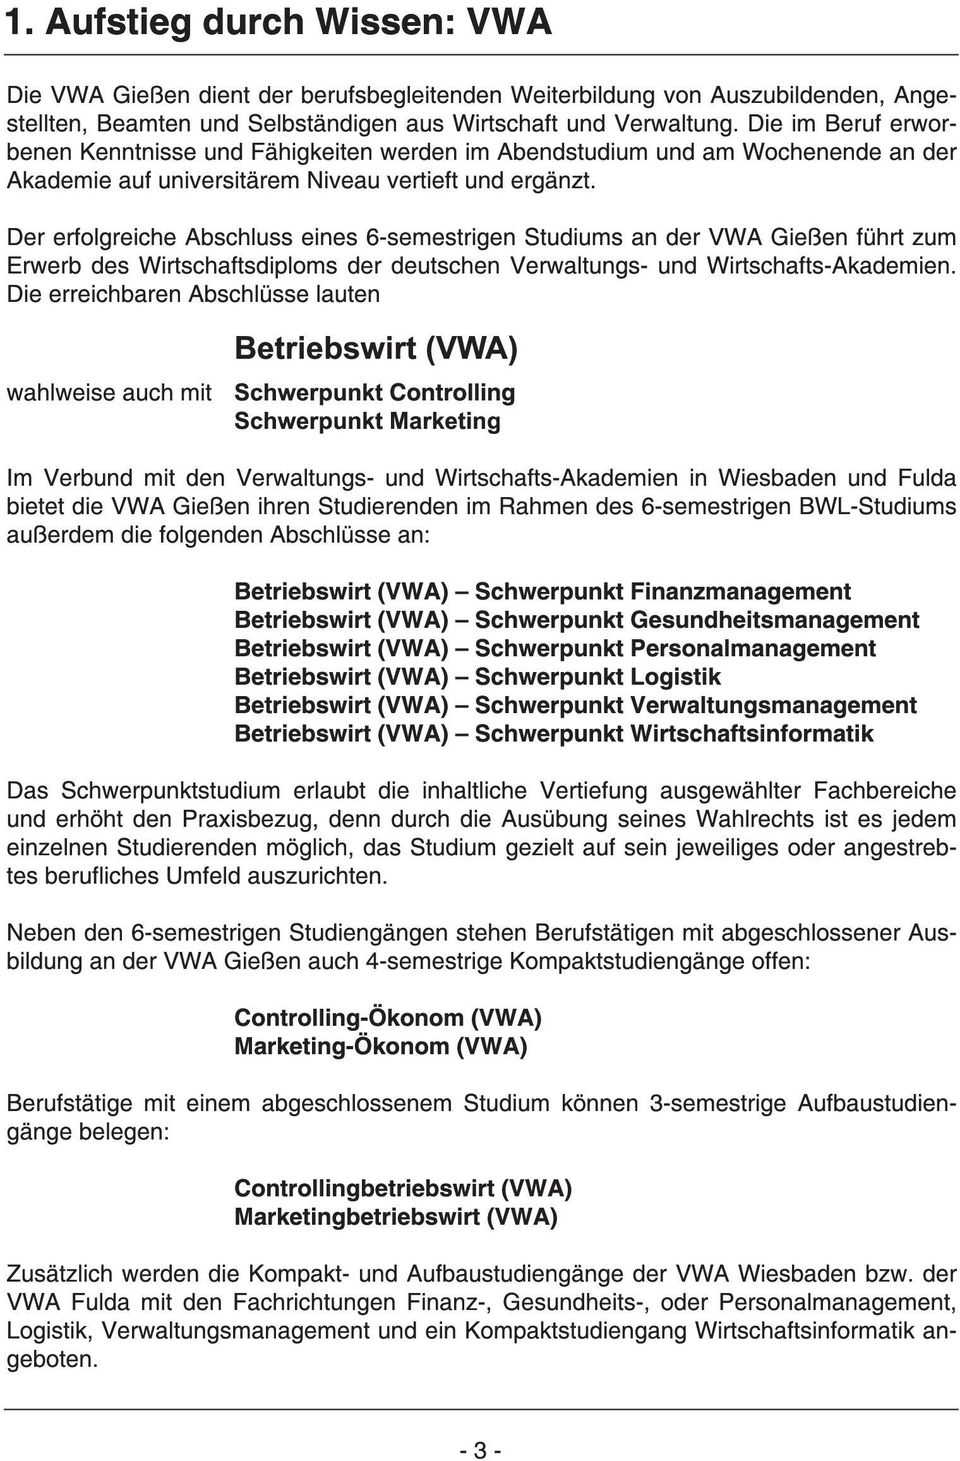 Der erfolgreiche Abschluss eines 6-semestrigen Studiums an der VWA Gießen führt zum Erwerb des Wirtschaftsdiploms der deutschen Verwaltungs- und Wirtschafts-Akademien.